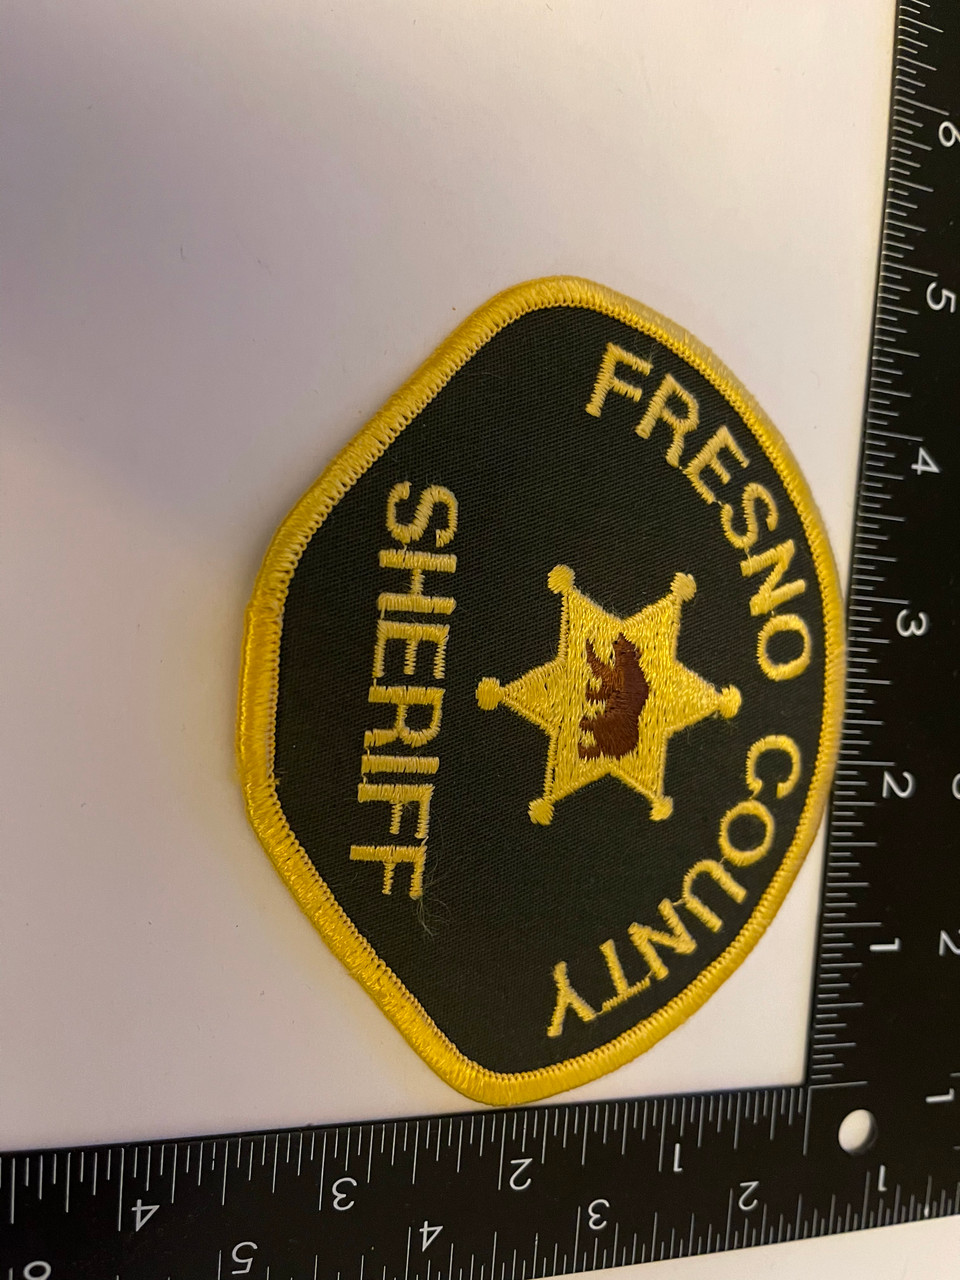 FRESNO COUNTY SHERIFF CA PATCH 2